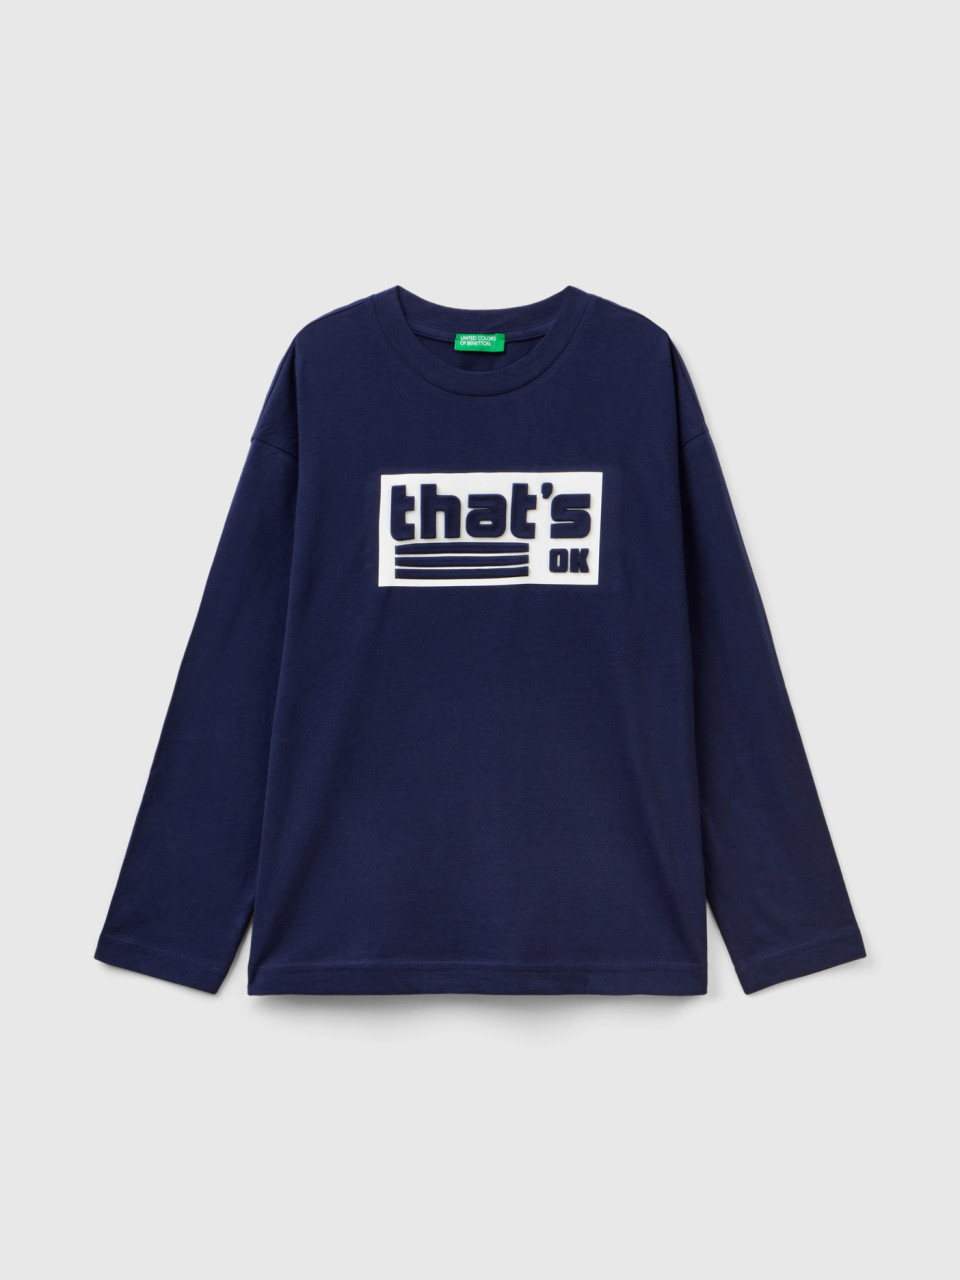 Benetton, T-shirt In Warm Cotton With Print, Dark Blue, Kids